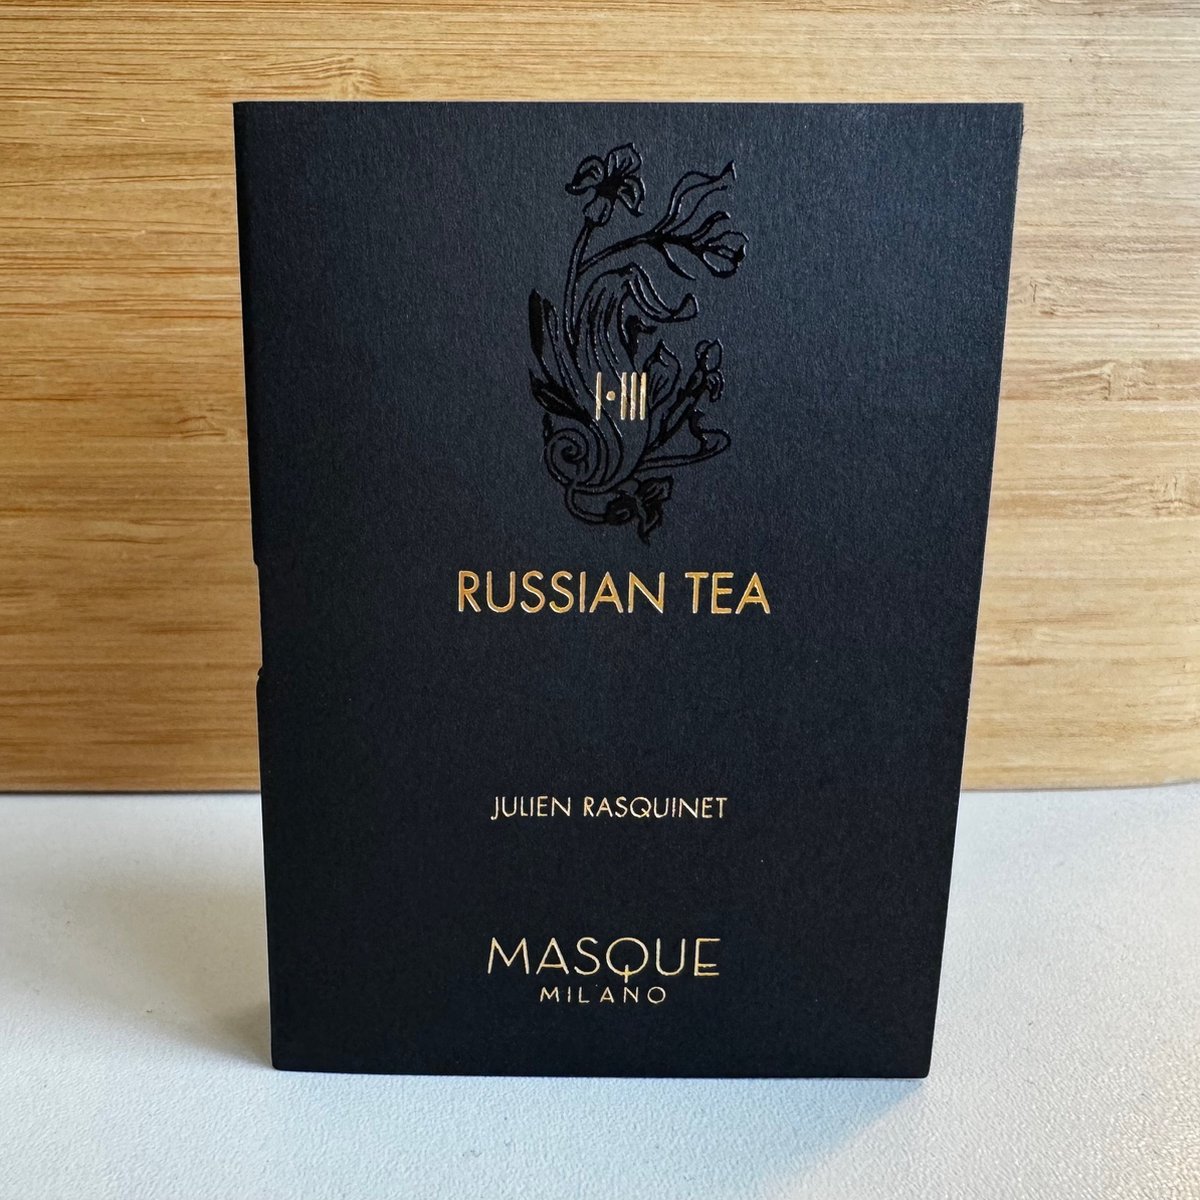 Masque Milano - Russian Tea - 2ml Original Sample